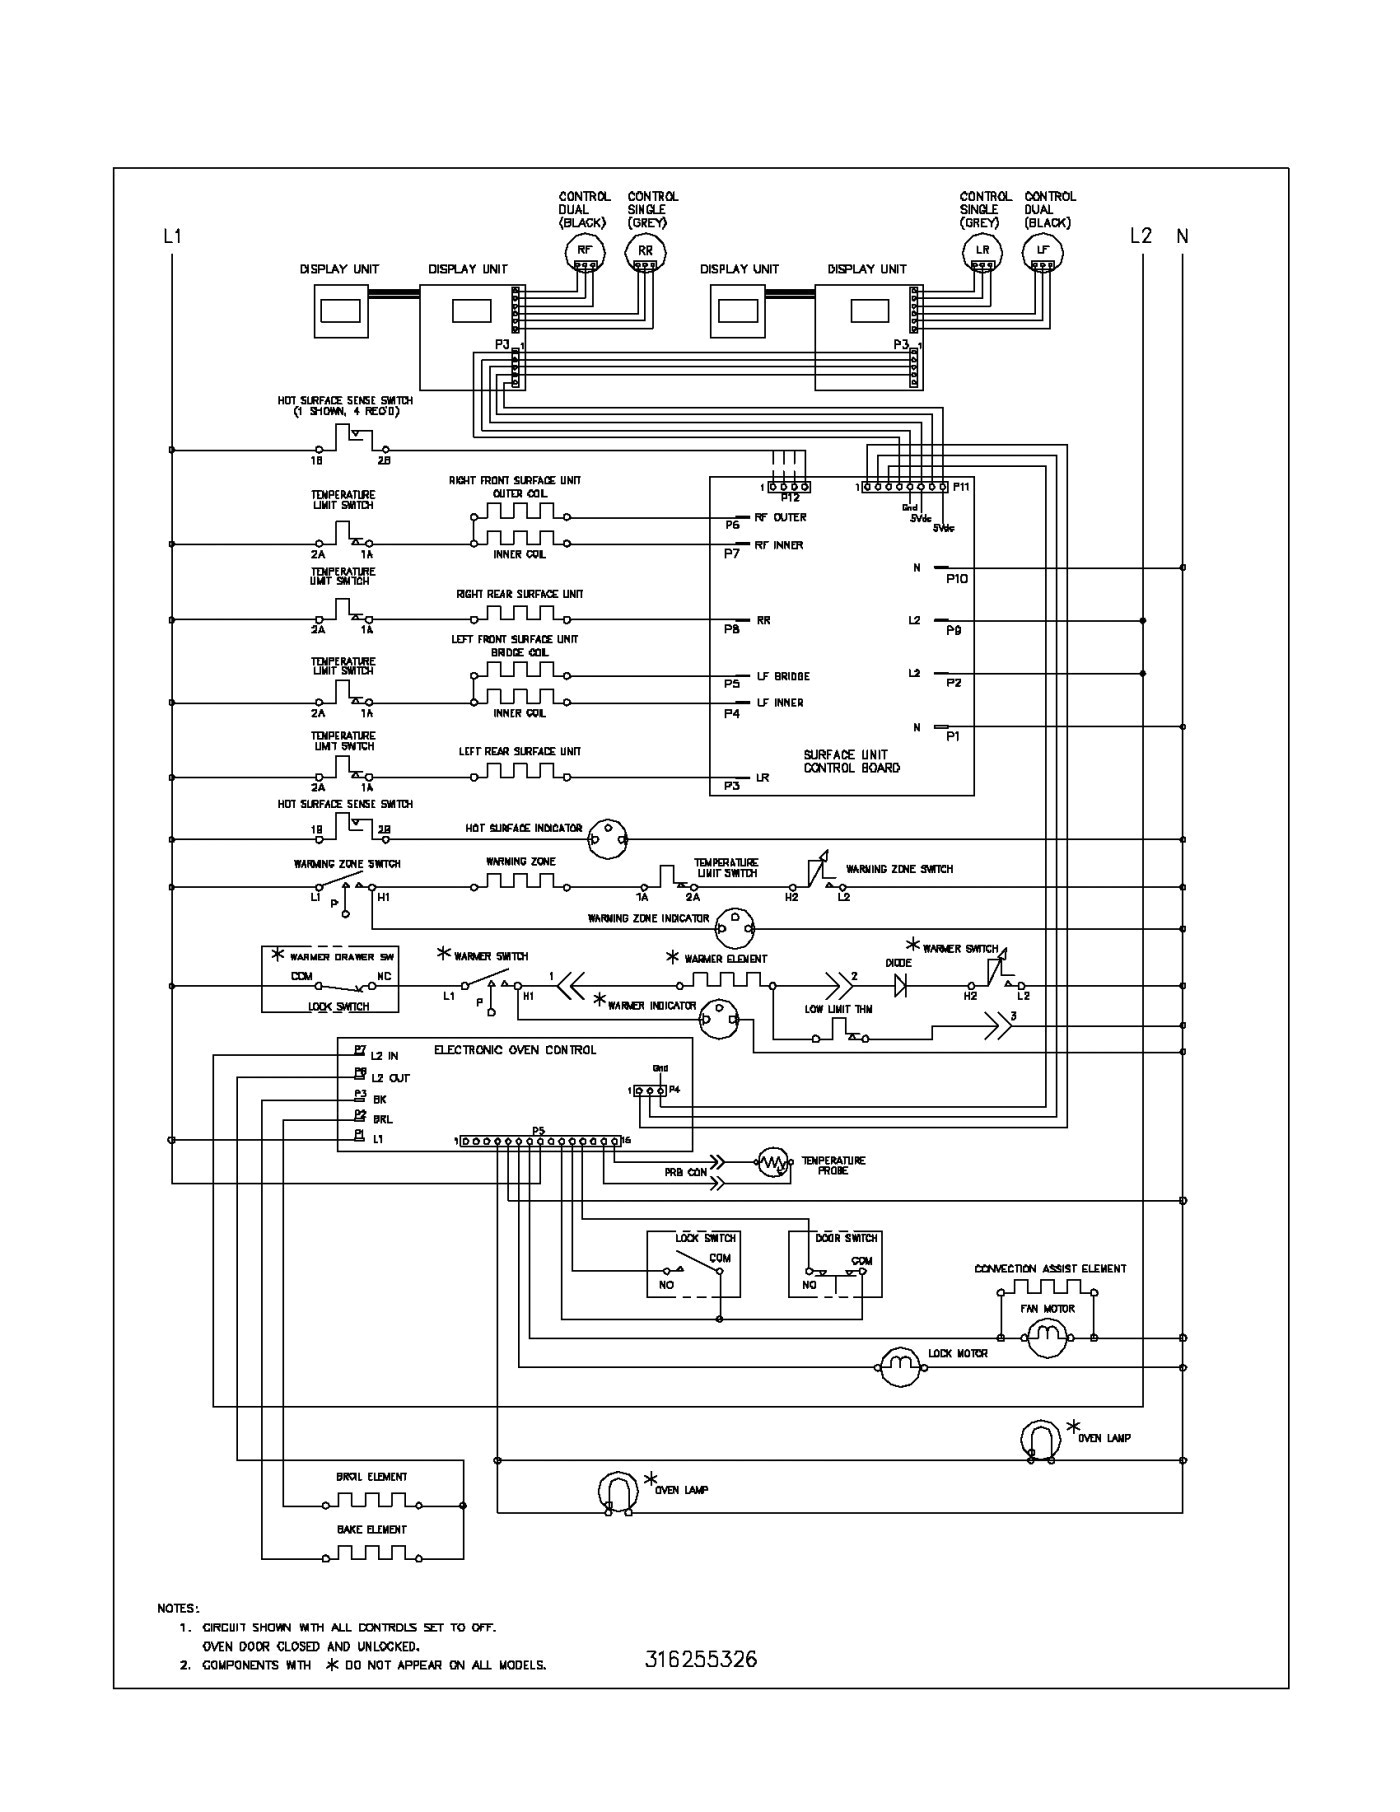 john deere 310d backhoe wiring diagram best of e1eh 015ha wiring diagram fresh e1eh 015ha wiring diagram free